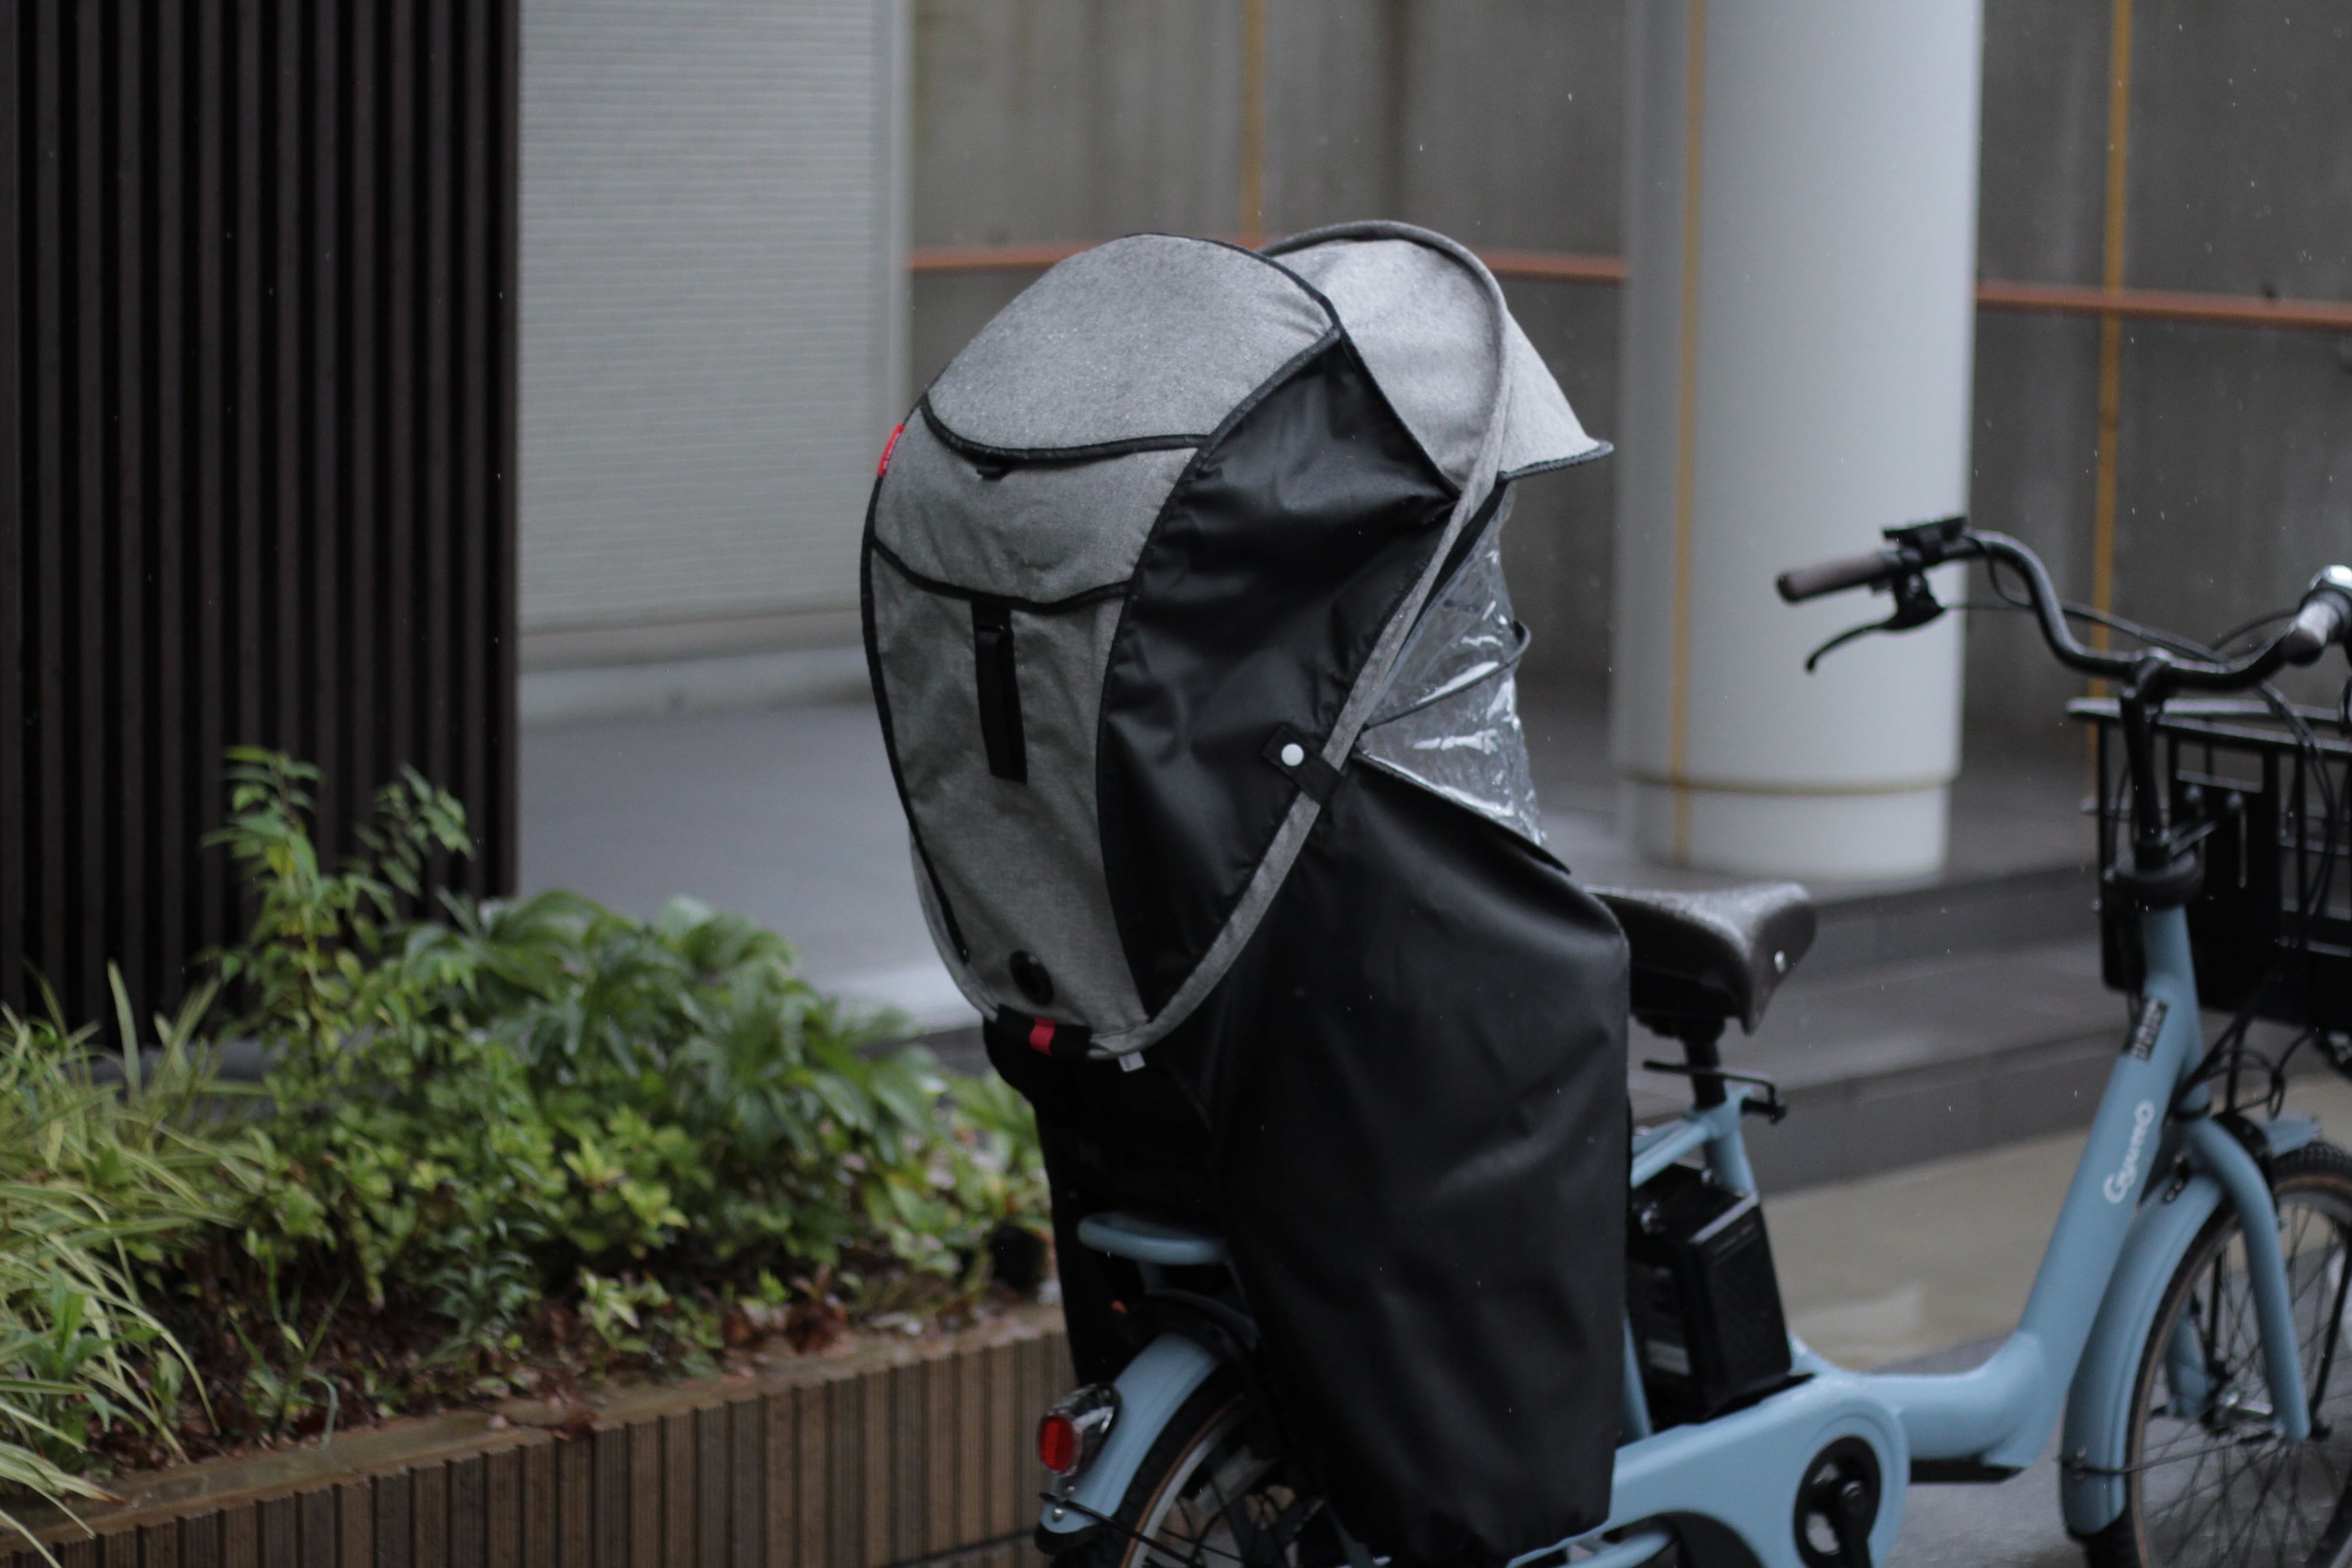 子供乗せ電動自転車期間限定価格【新品】シェル型レインカバー　D-5RG5-O マルト